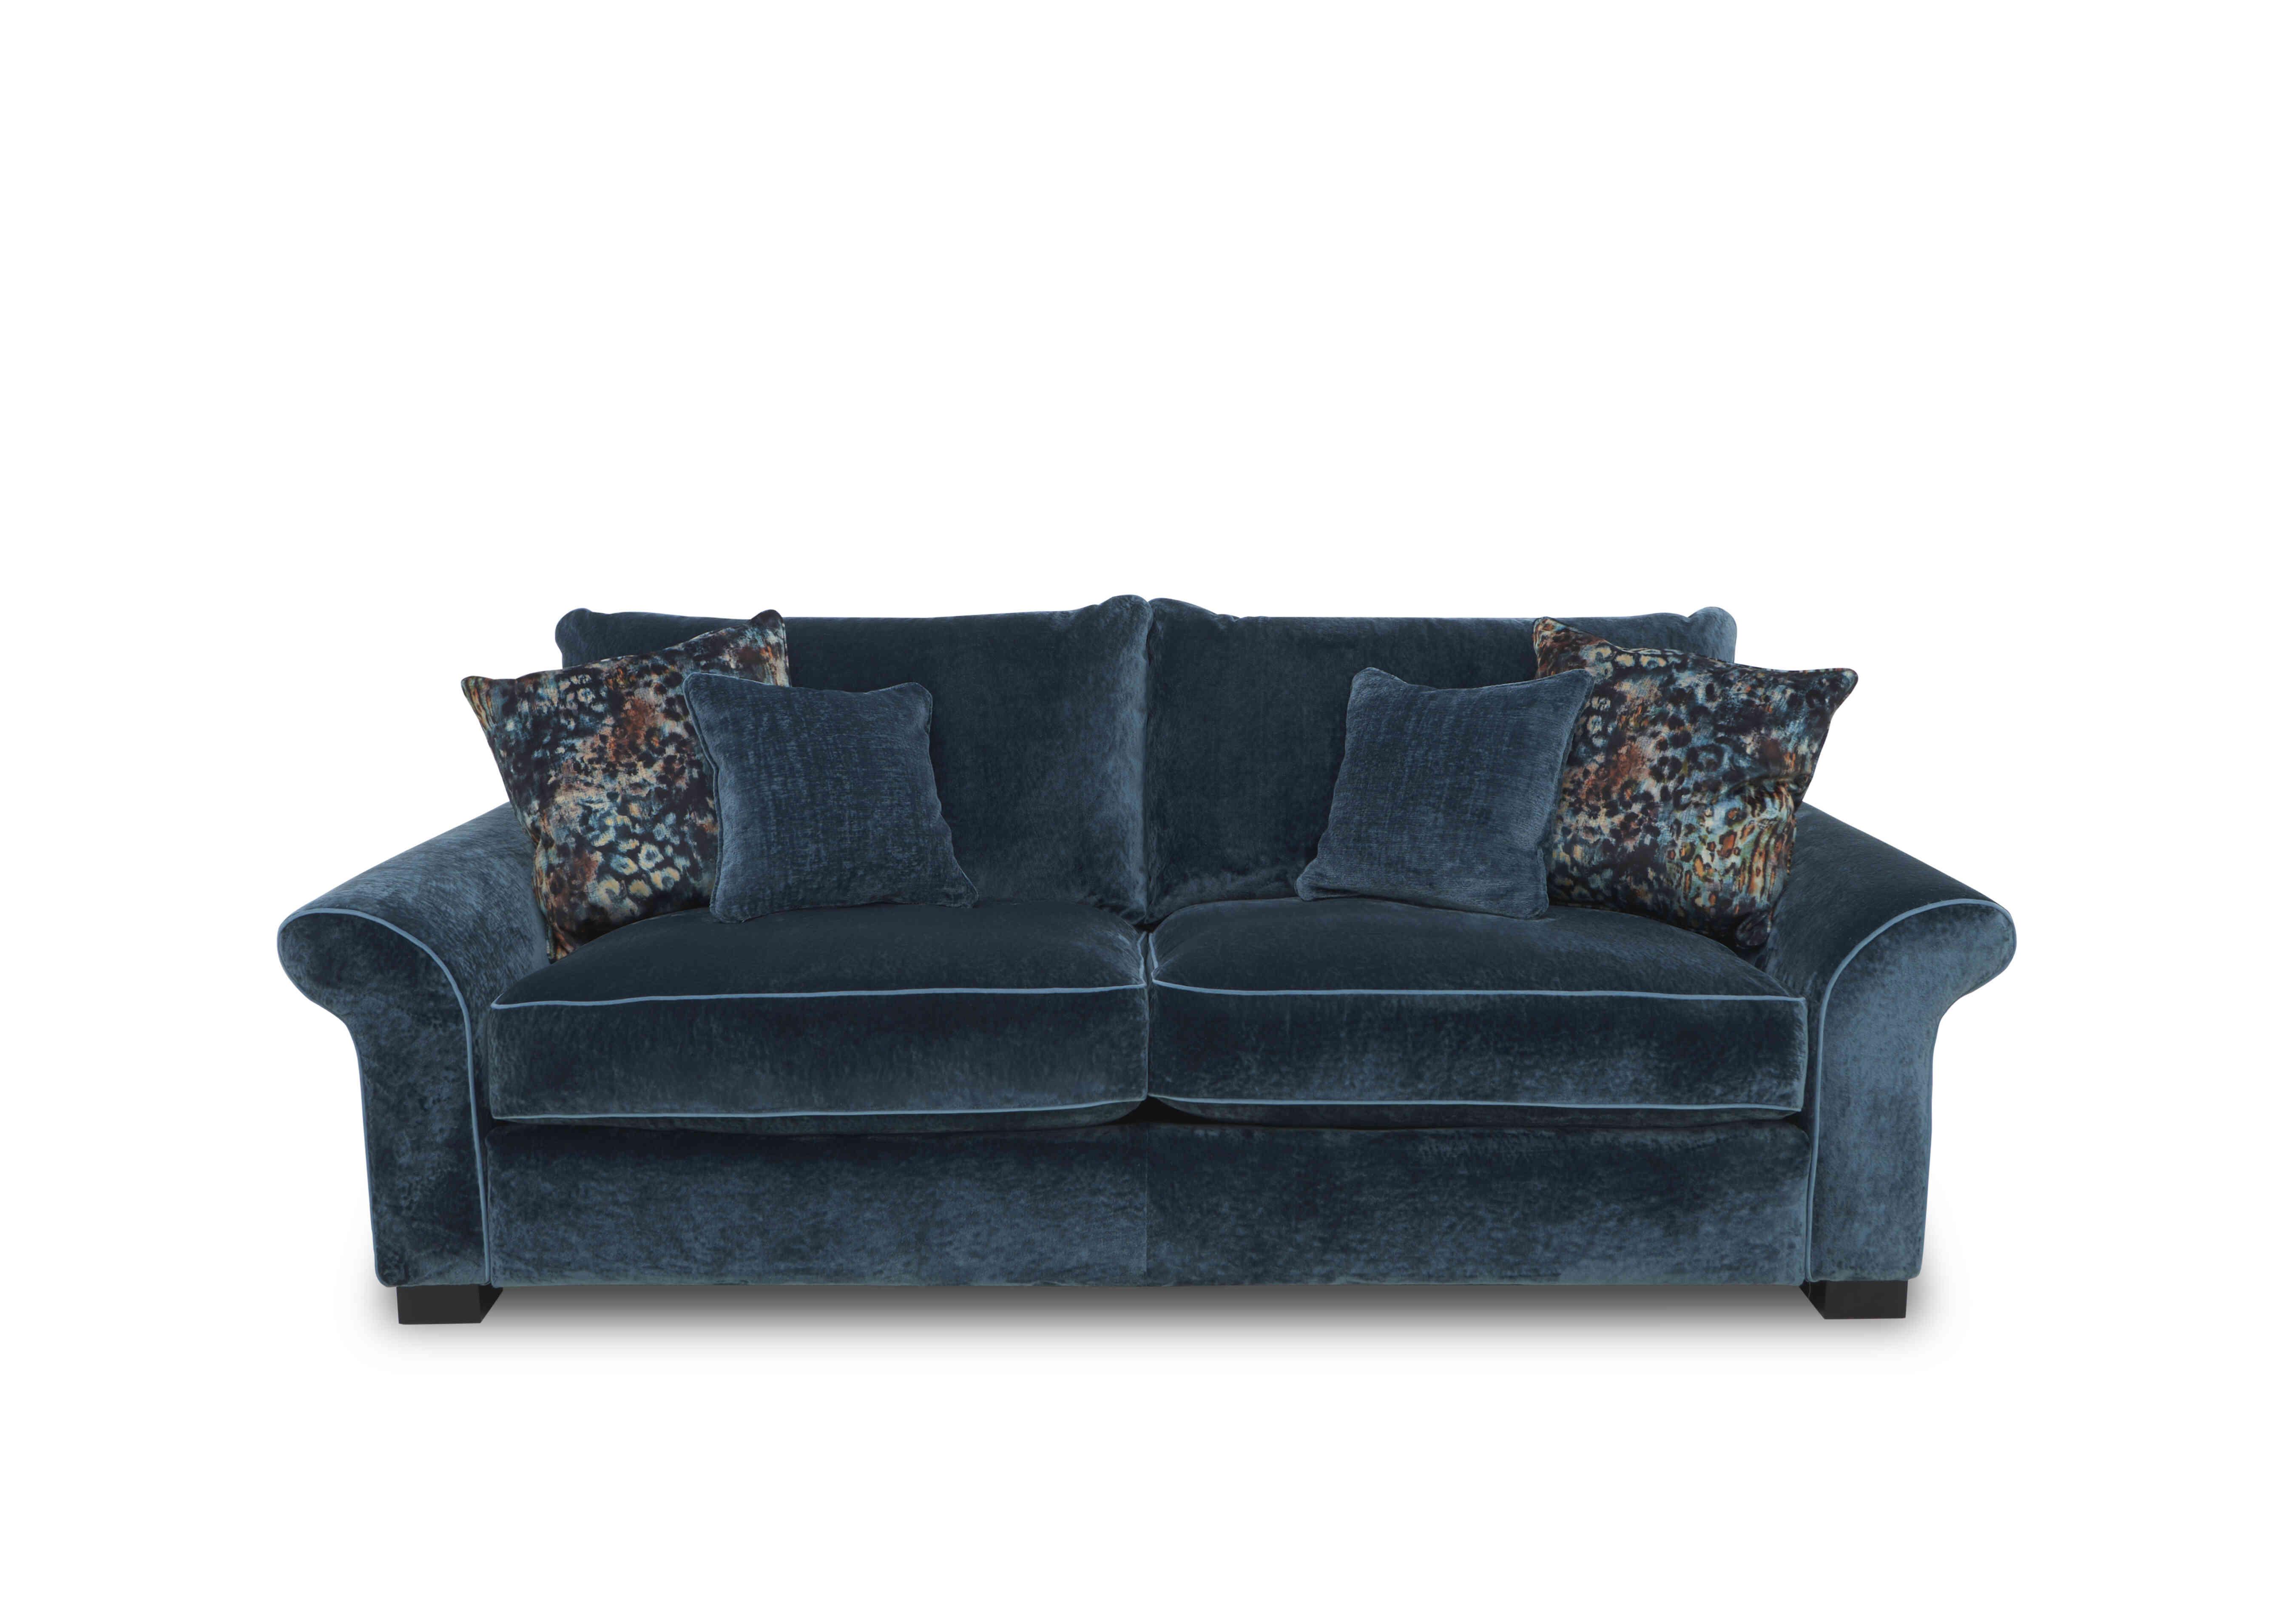 Modern Classics Hyde Park 3 Seater Sofa in Remini Petrol Blue Cp Mf on Furniture Village